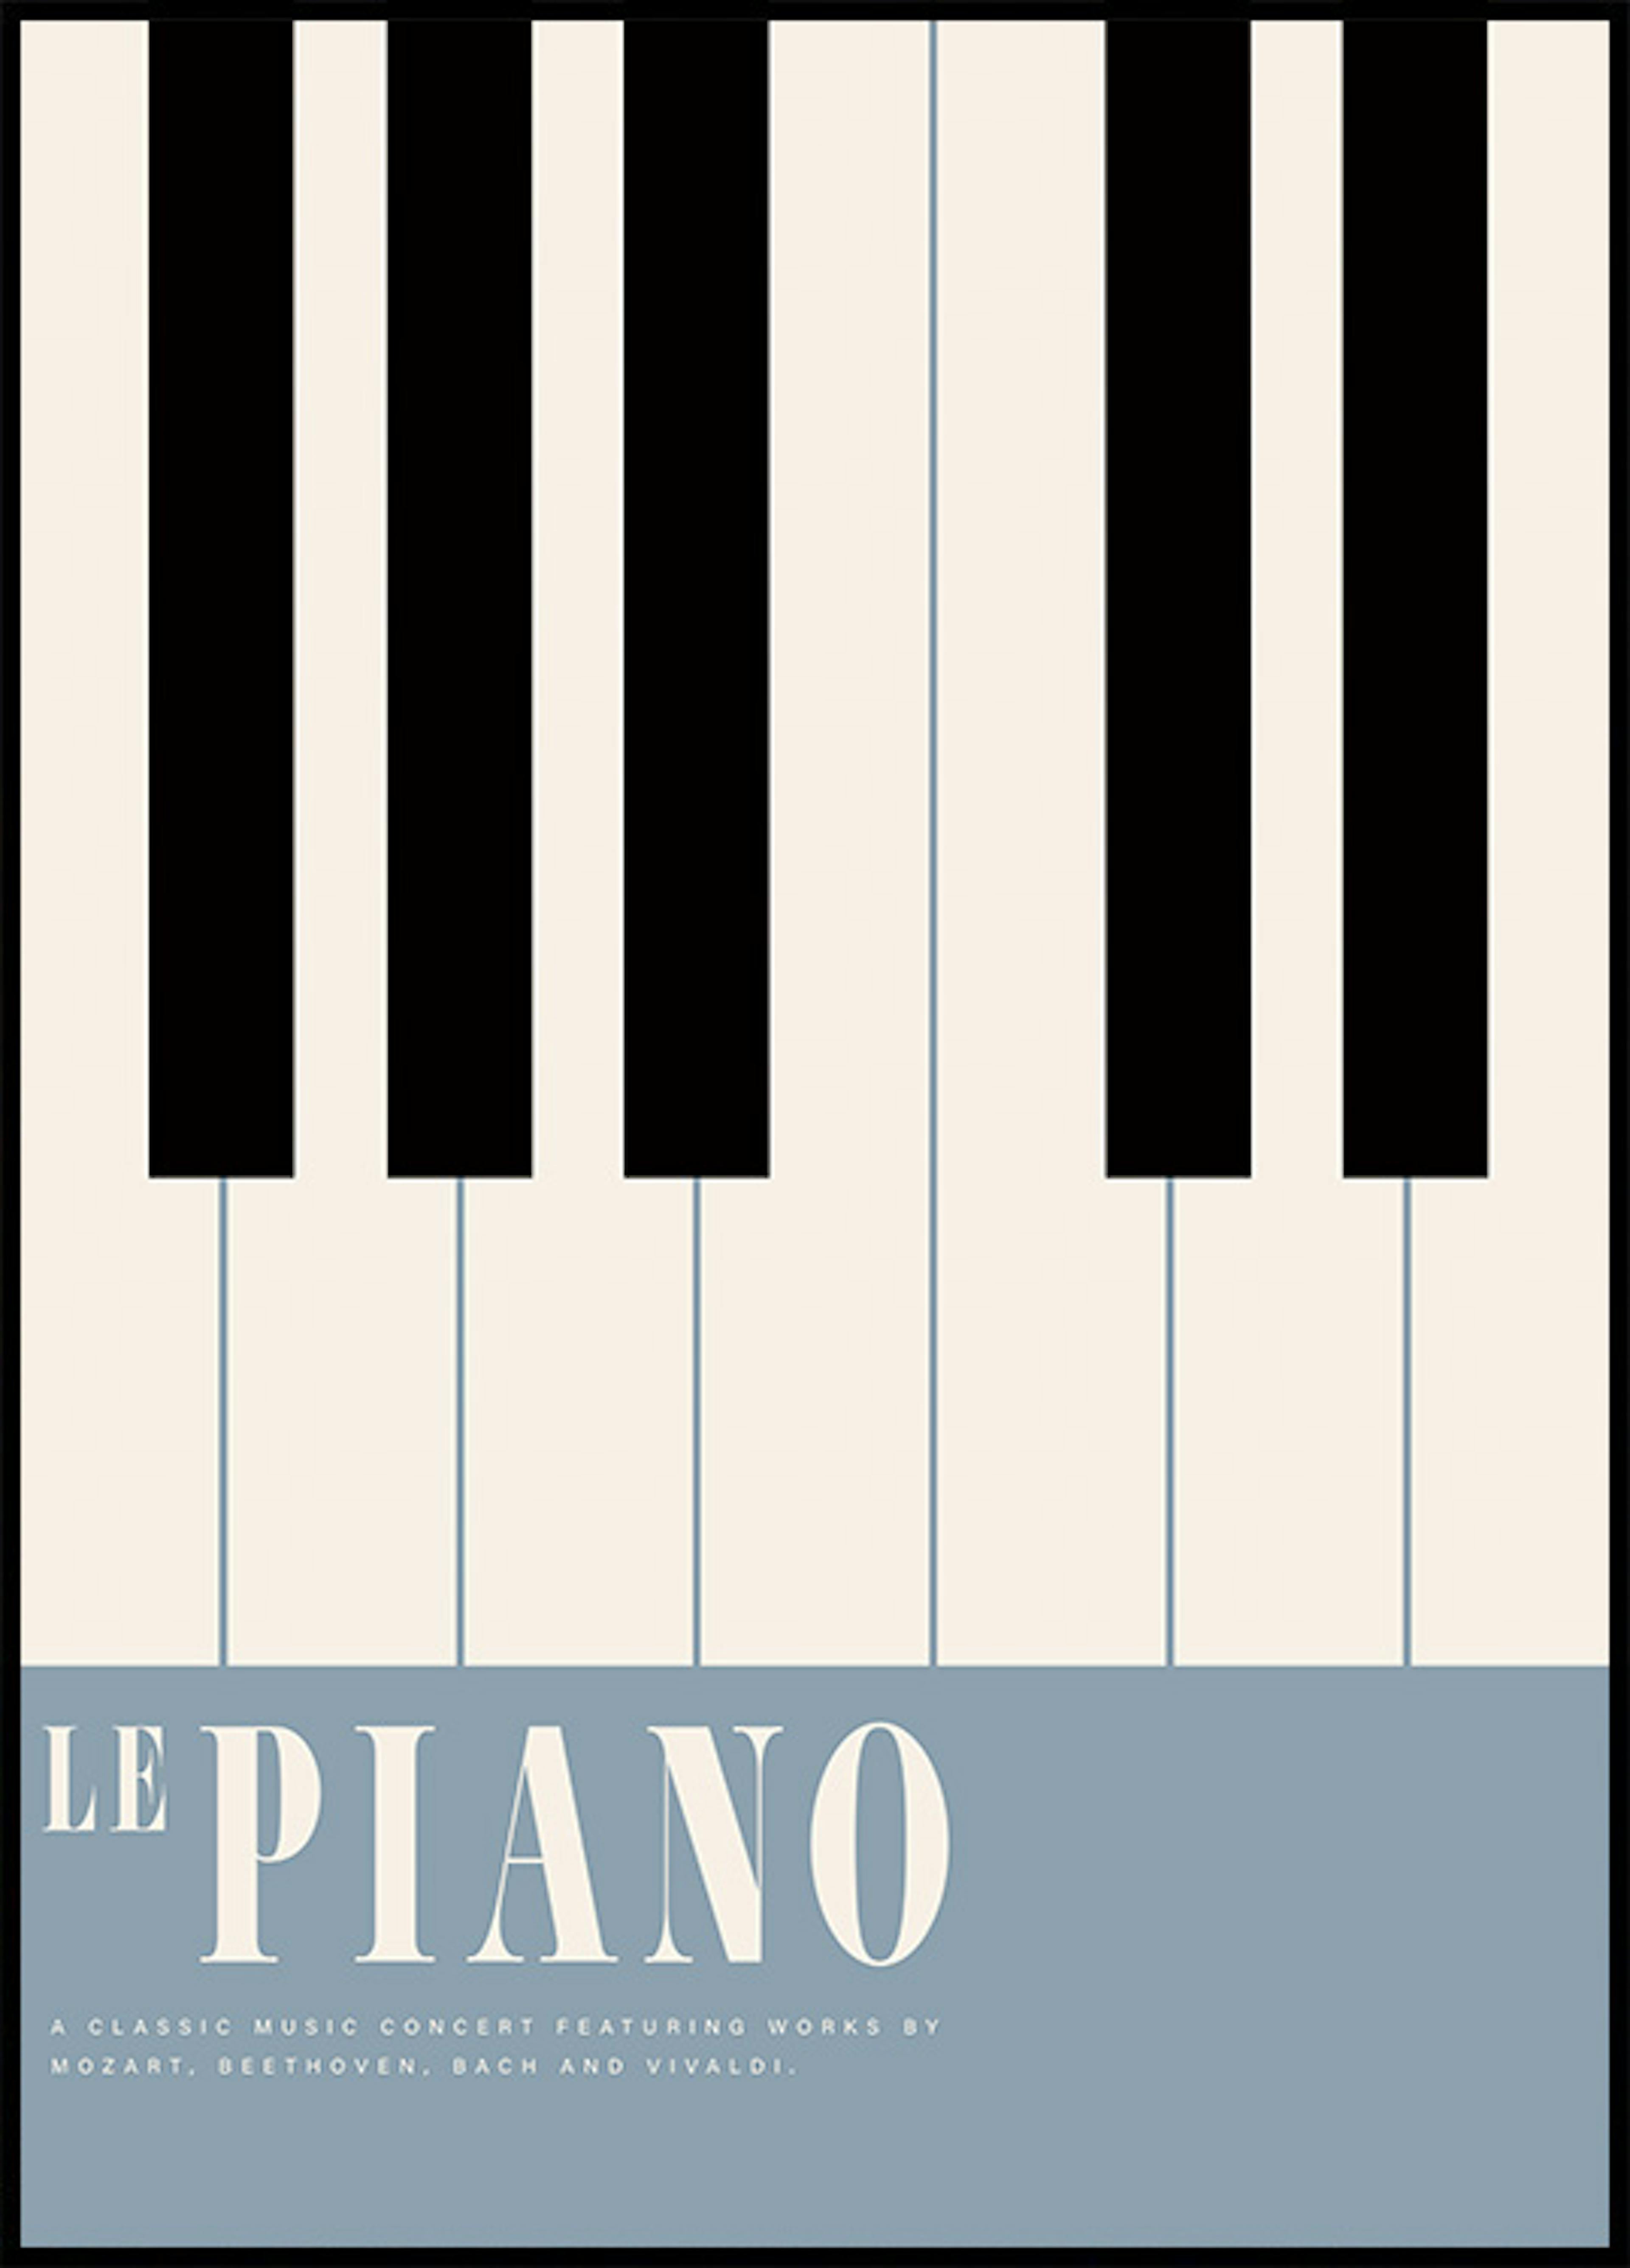 Le Piano Poster 0